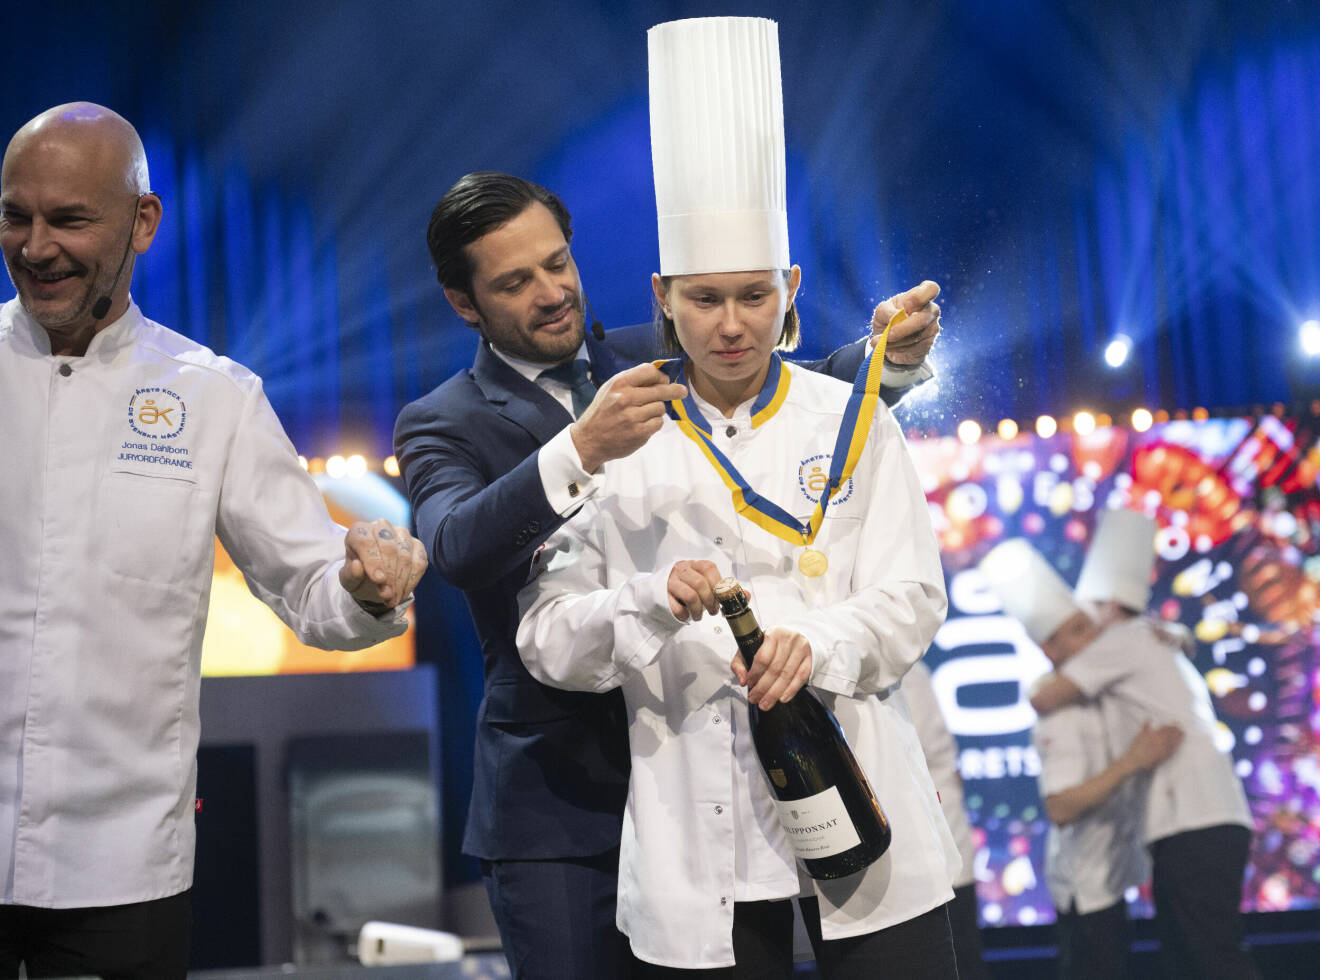 Prins Carl Philip hänger medaljen om halsen på kocken Desirée Jaks, vinnare av Årets kock 2023 efter finalen som avgjordes i Annexet vid Globen.